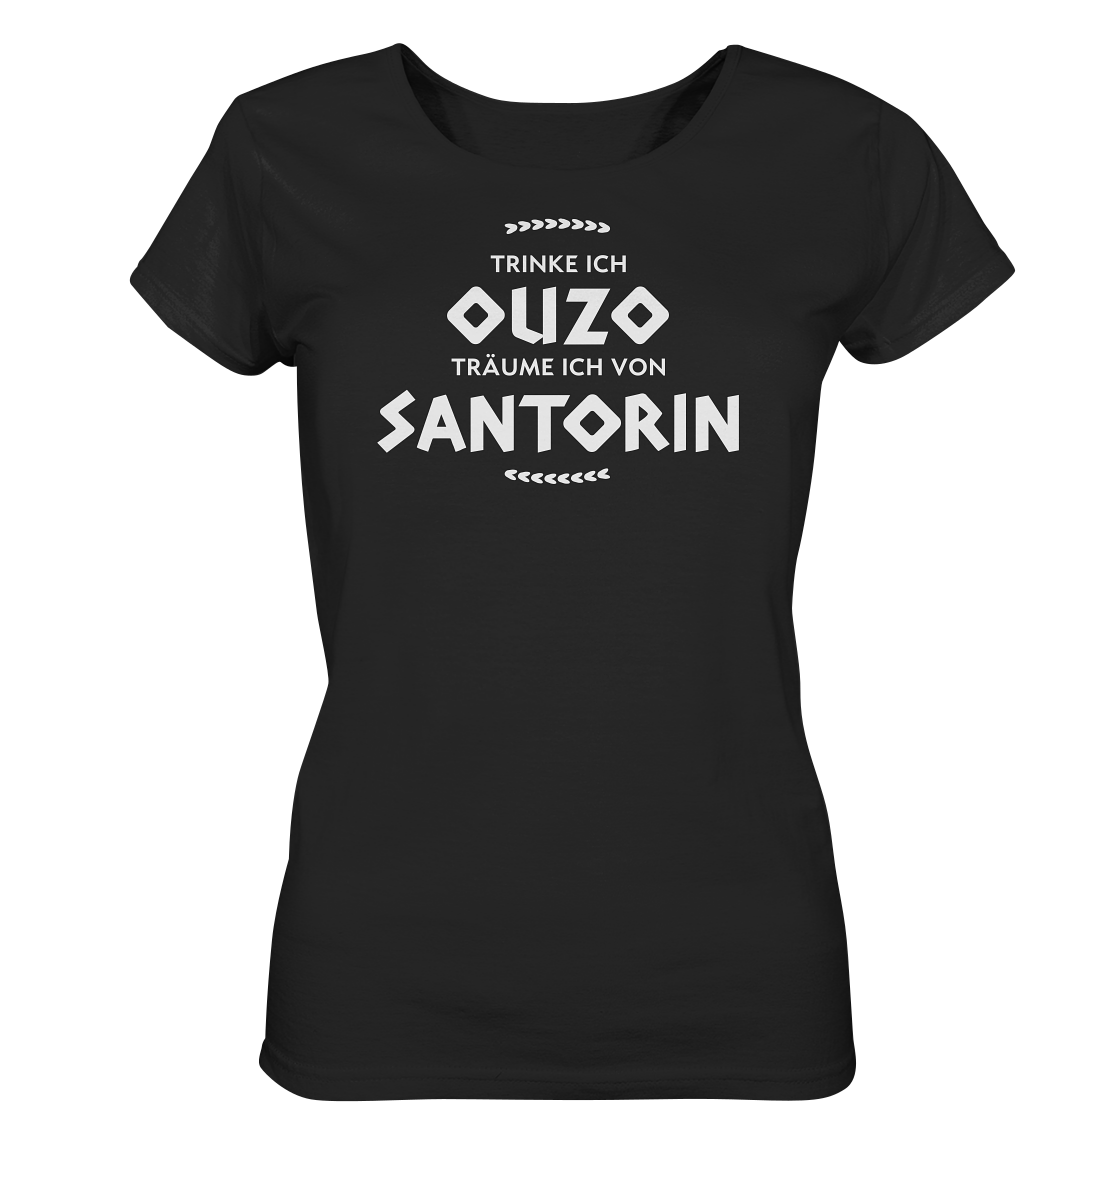 Trinke ich Ouzo träume ich von Santorin - Ladies Organic Shirt